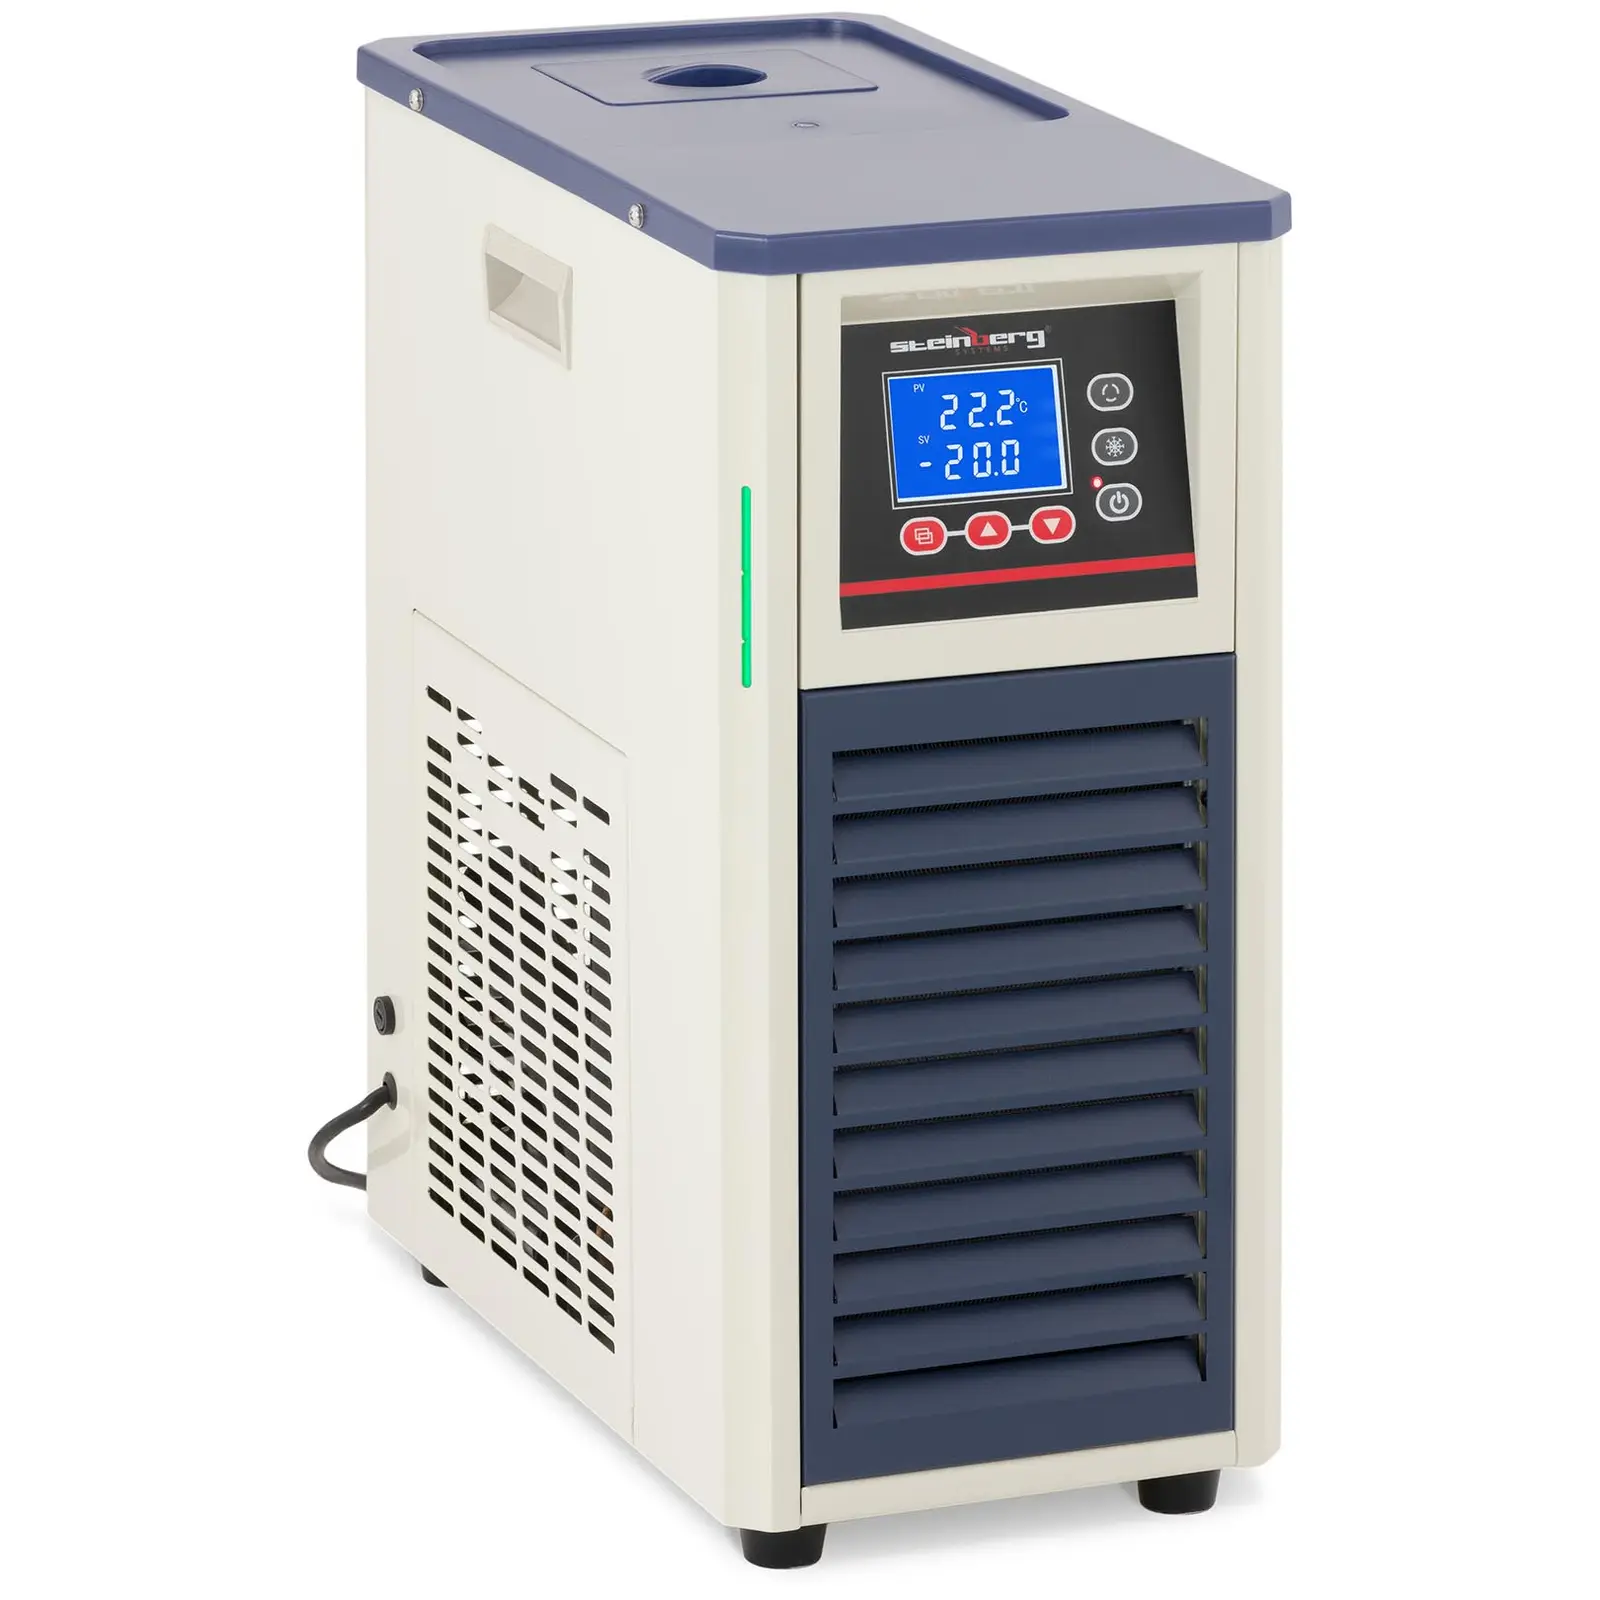 Rinfrescatore aria a circolazione - Compressore: 495 W - Da -20 a 20℃ - 20 L/min